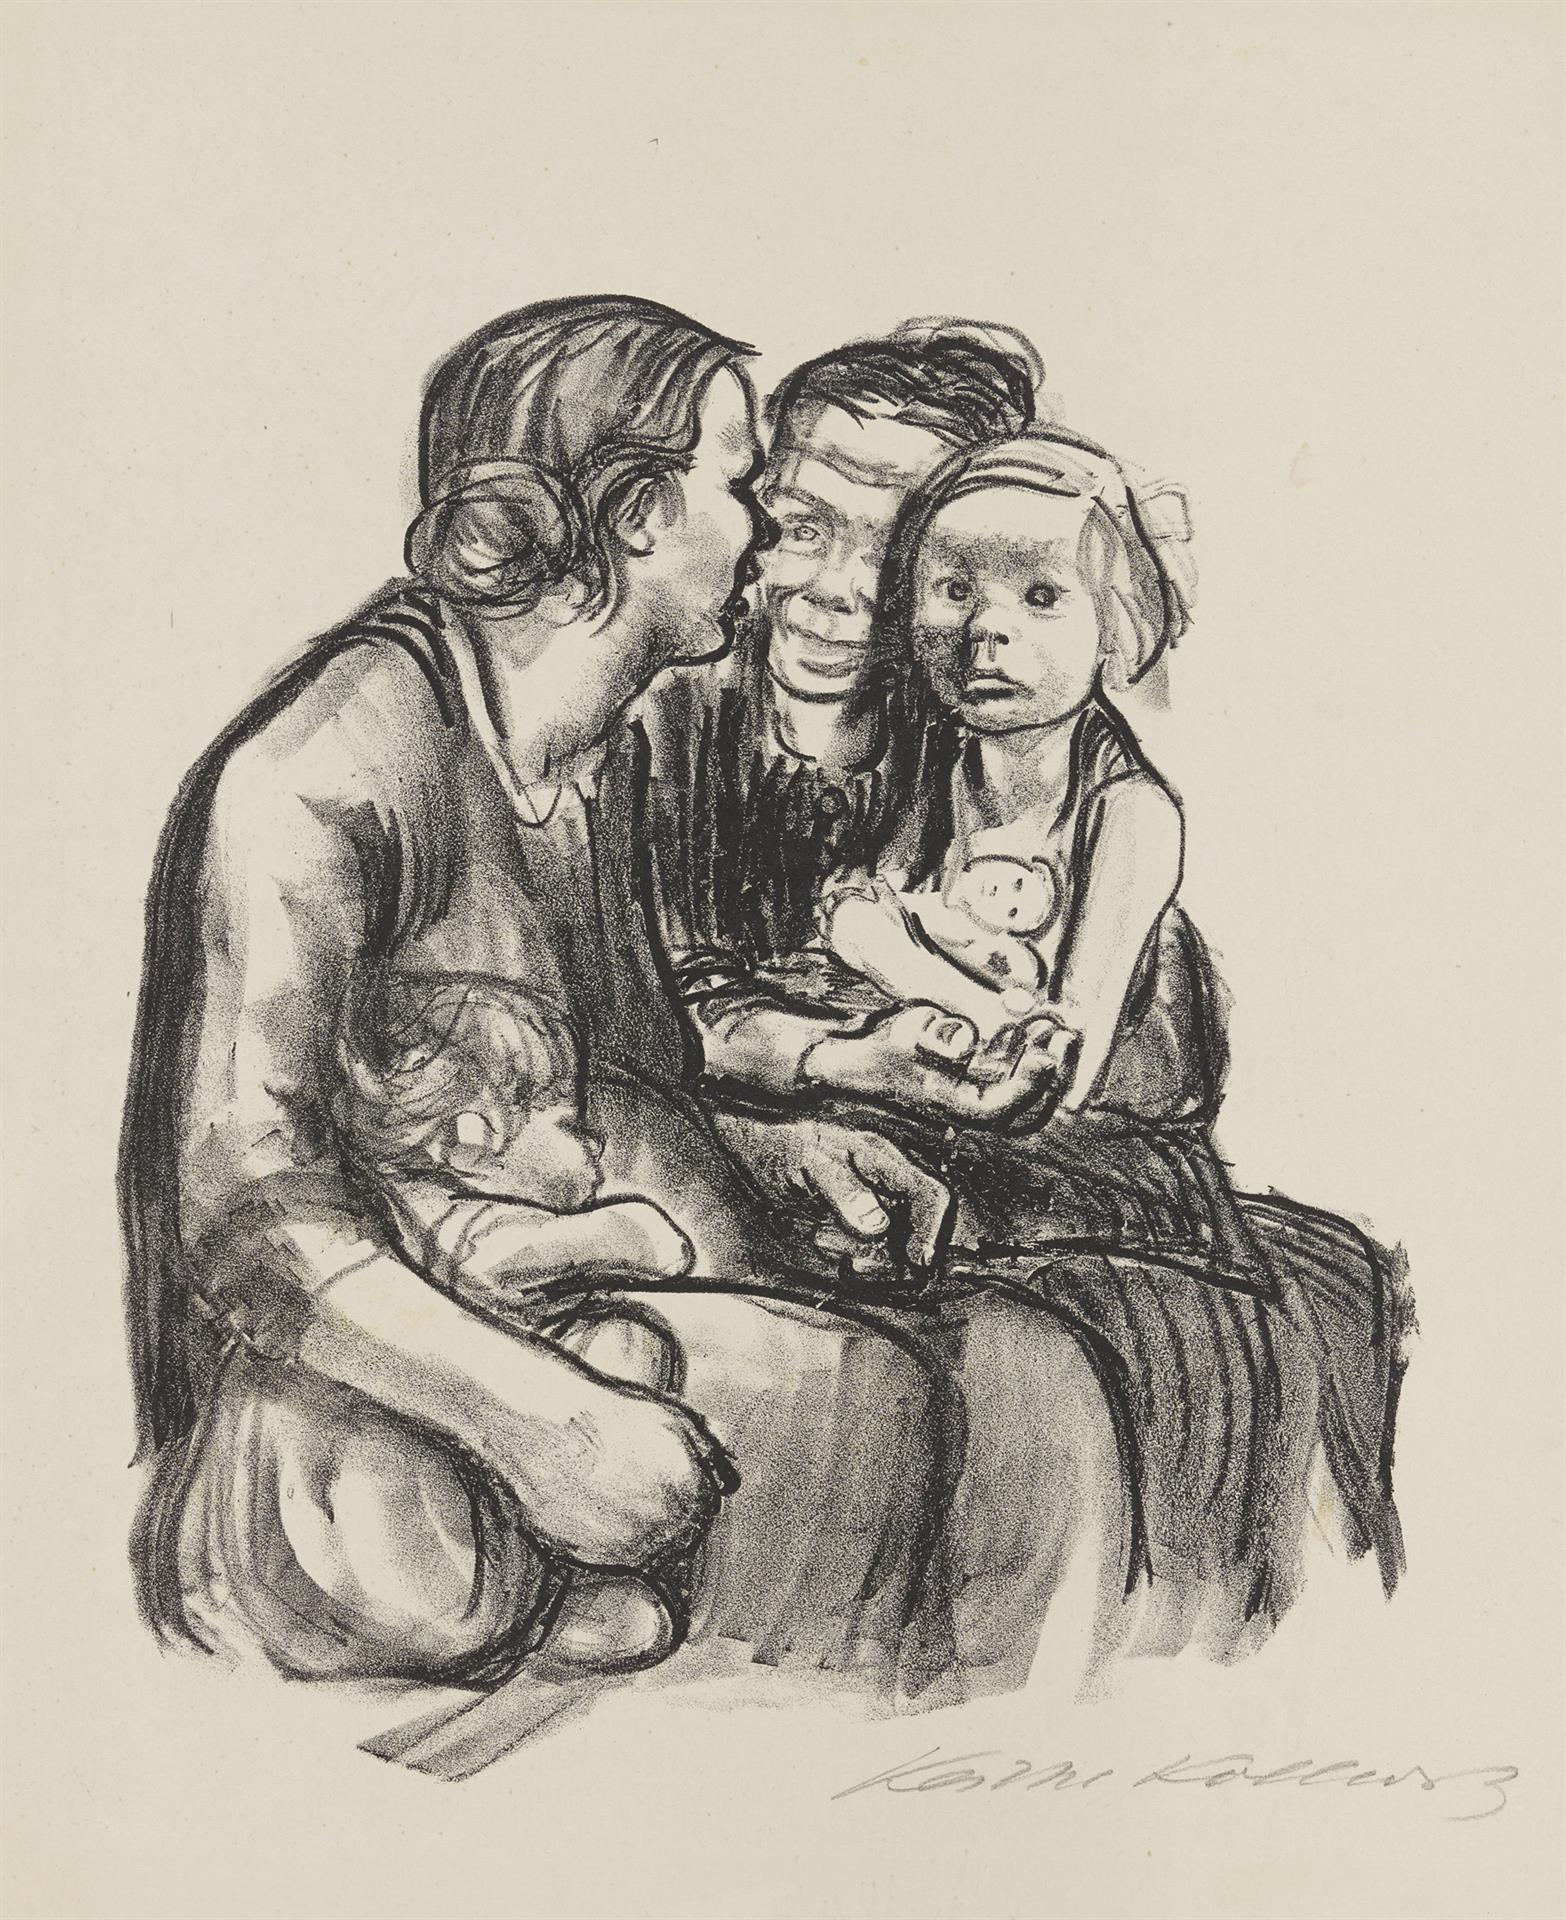 Käthe Kollwitz, Deux femmes bavardant avec deux enfants, version finale, 1930, lithographie au crayon (report), Kn 250 c, Collection Kollwitz de Cologne © Käthe Kollwitz Museum Köln